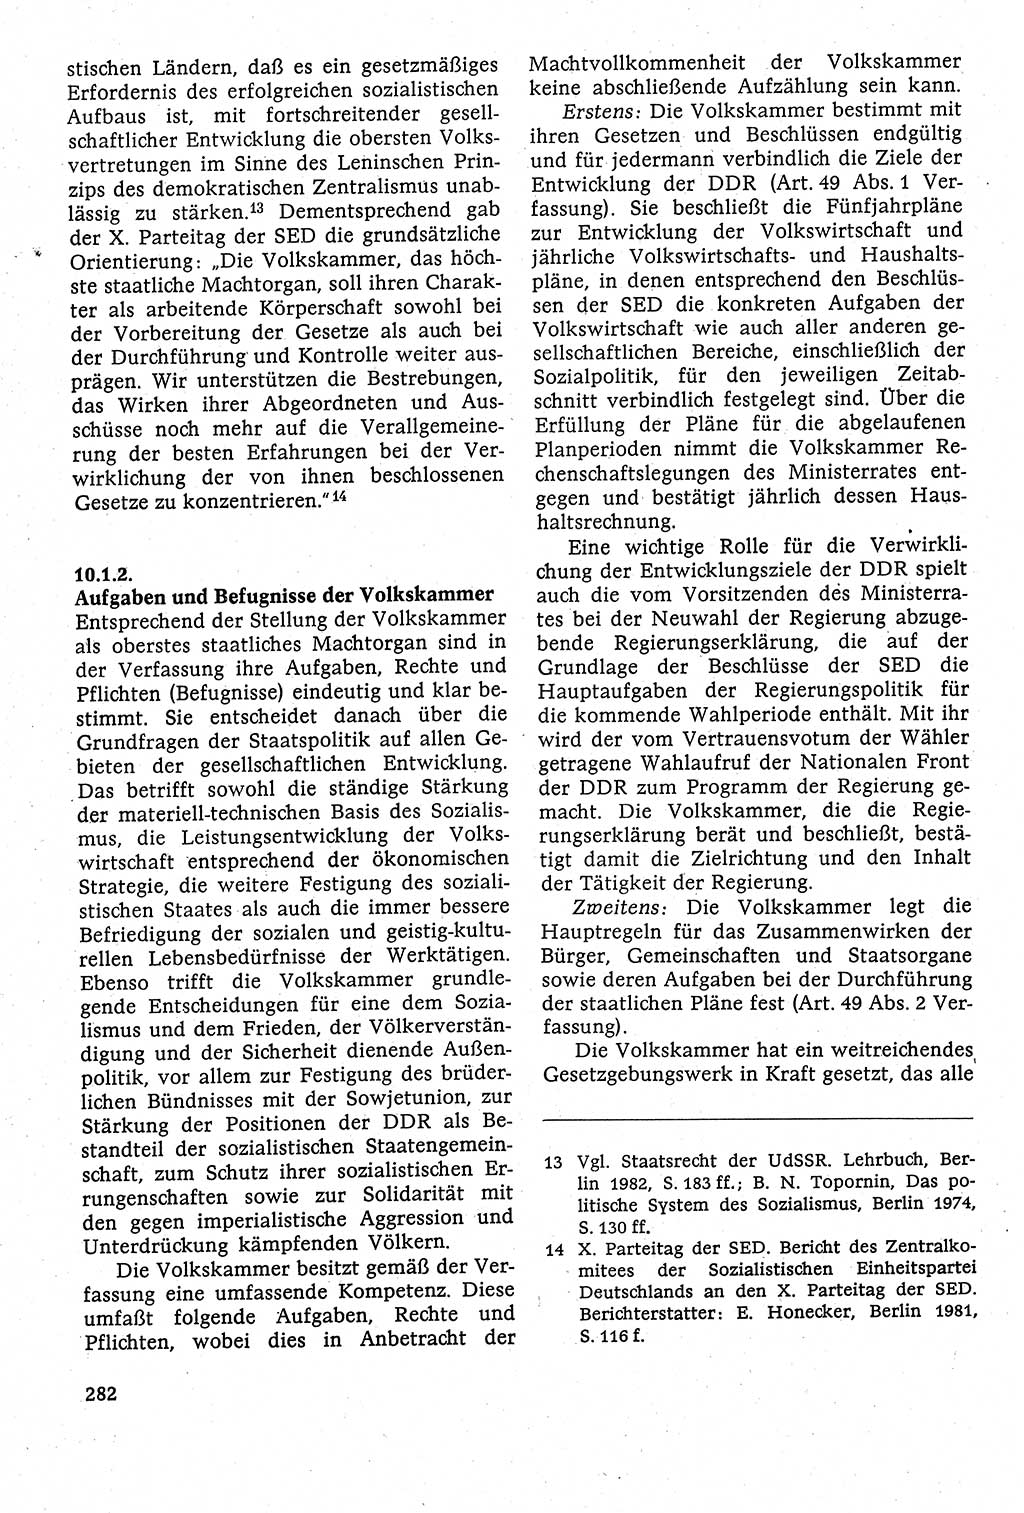 Staatsrecht der DDR [Deutsche Demokratische Republik (DDR)], Lehrbuch 1984, Seite 282 (St.-R. DDR Lb. 1984, S. 282)